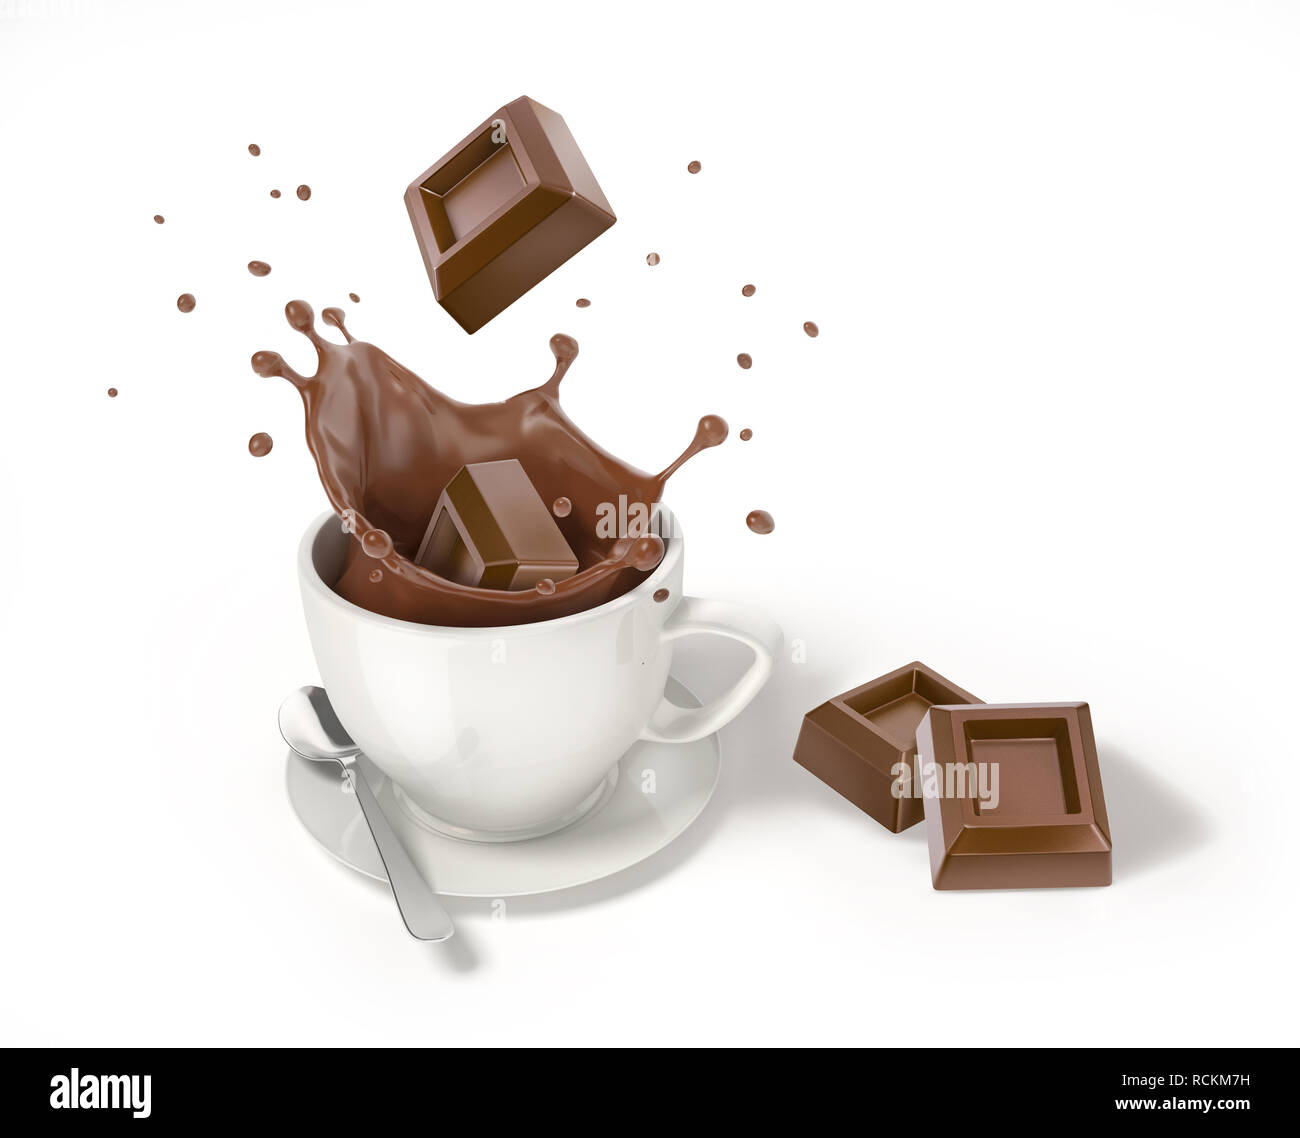 Schokolade Würfel in eine weiße Tasse mit flüssiger Schokolade splash fallen. Zwei andere Würfel neben. Auf weissem Hintergrund. Stockfoto